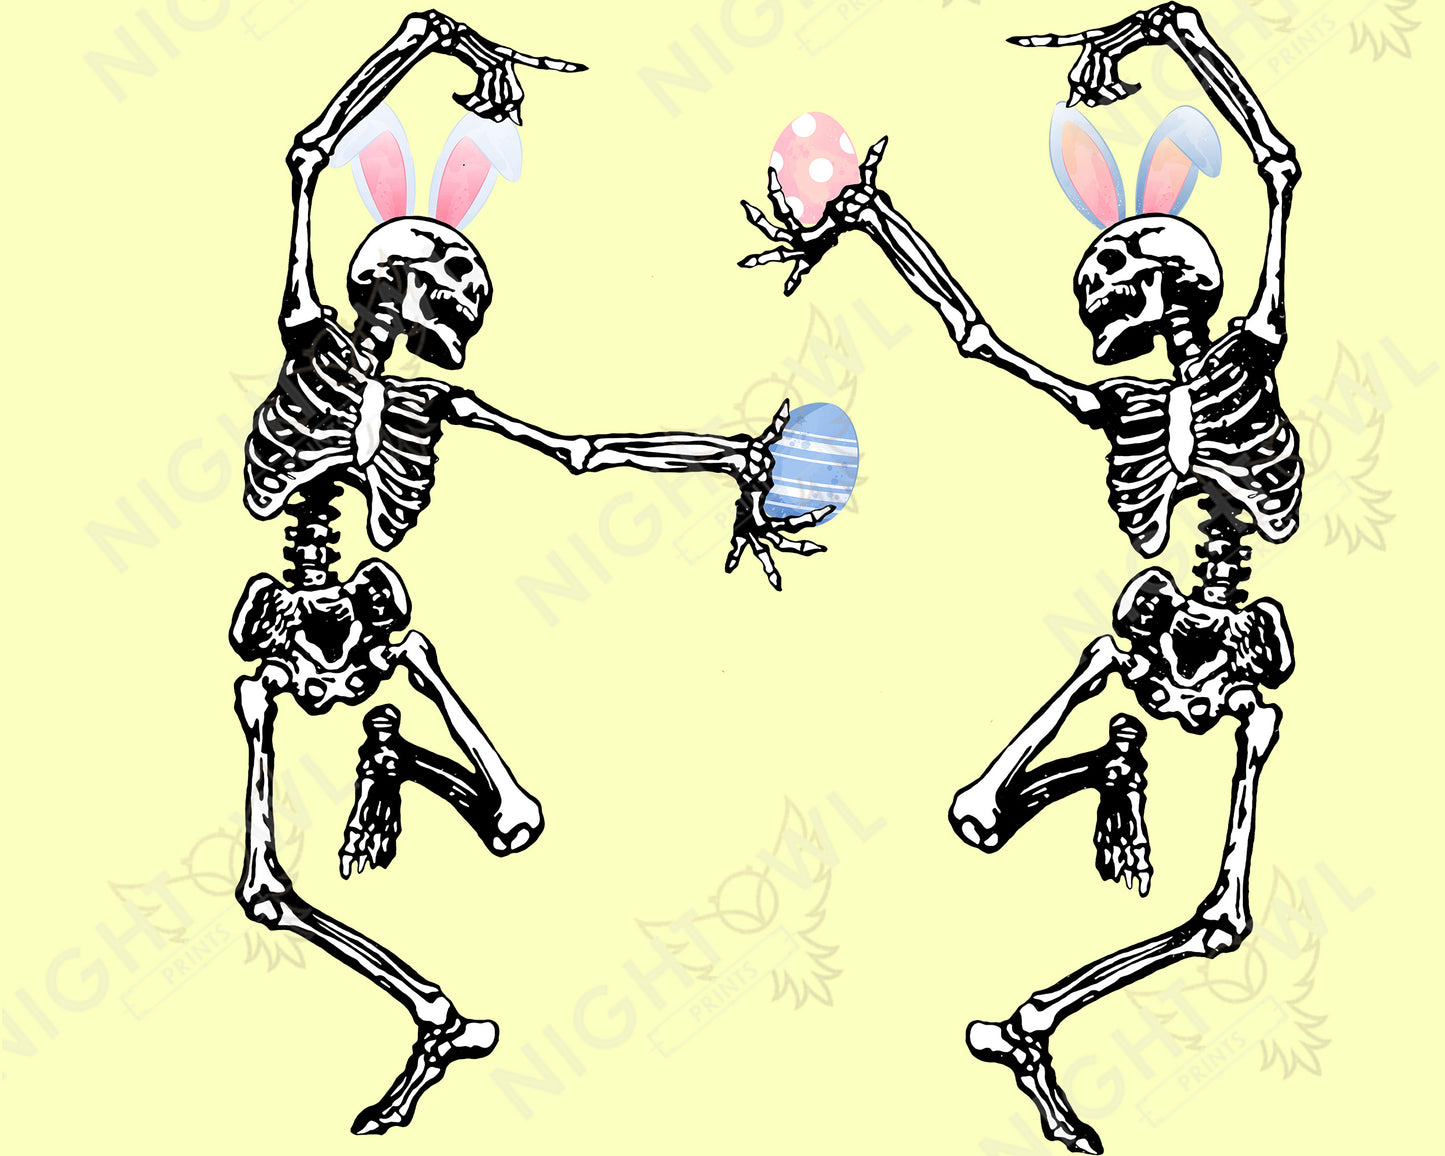 Digital Download file PNG. Easter Egg Dancing Skeleton . 300 DPI.  Print ready file.